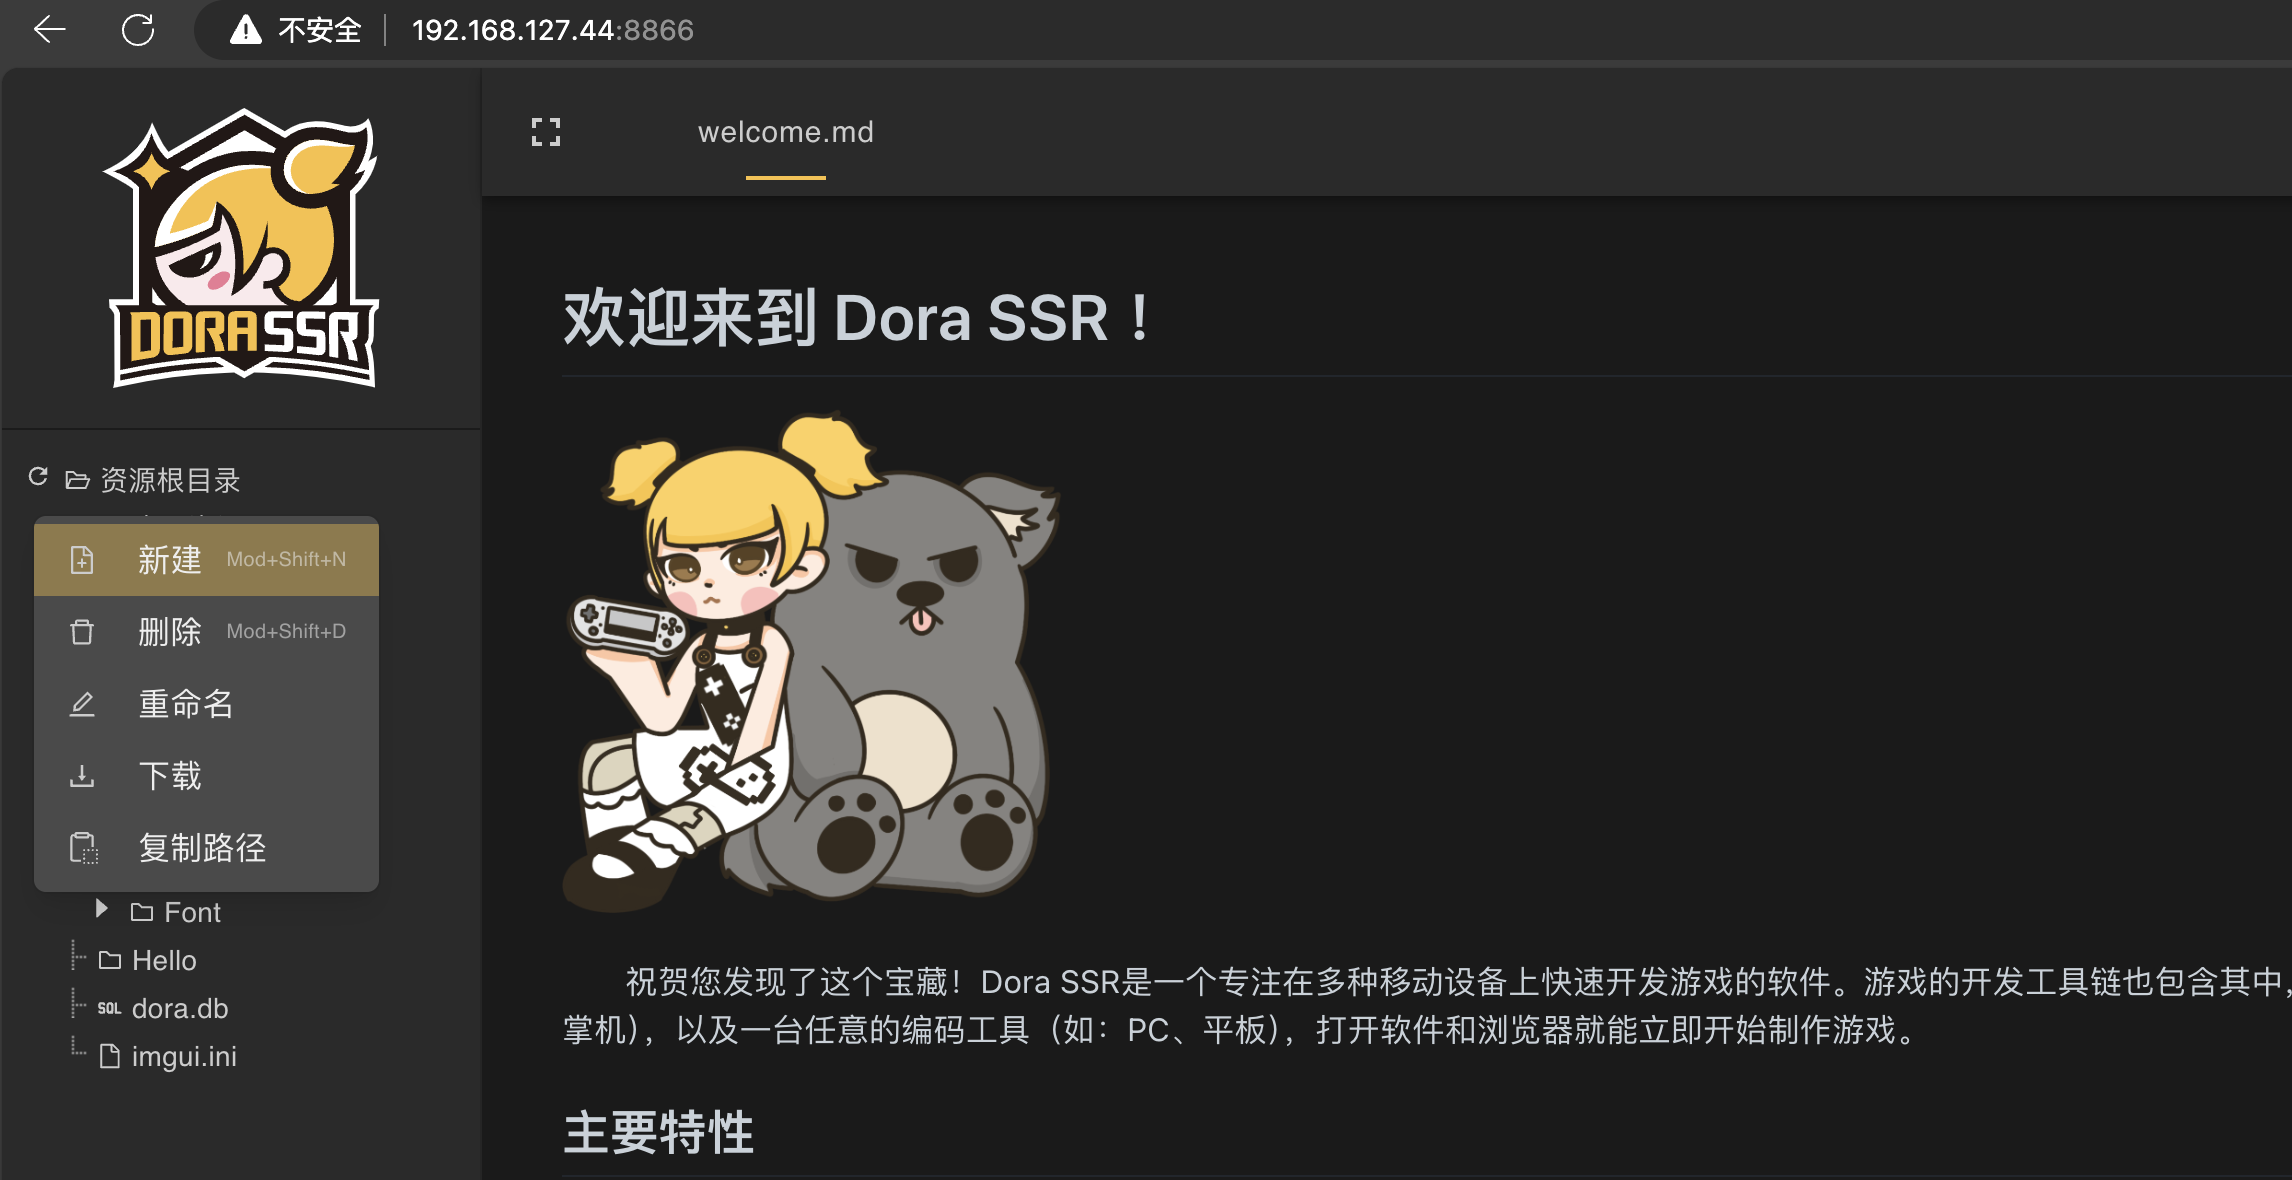 Accédez à l'IDE Web de Dora SSR dans le navigateur et créez un nouveau dossier